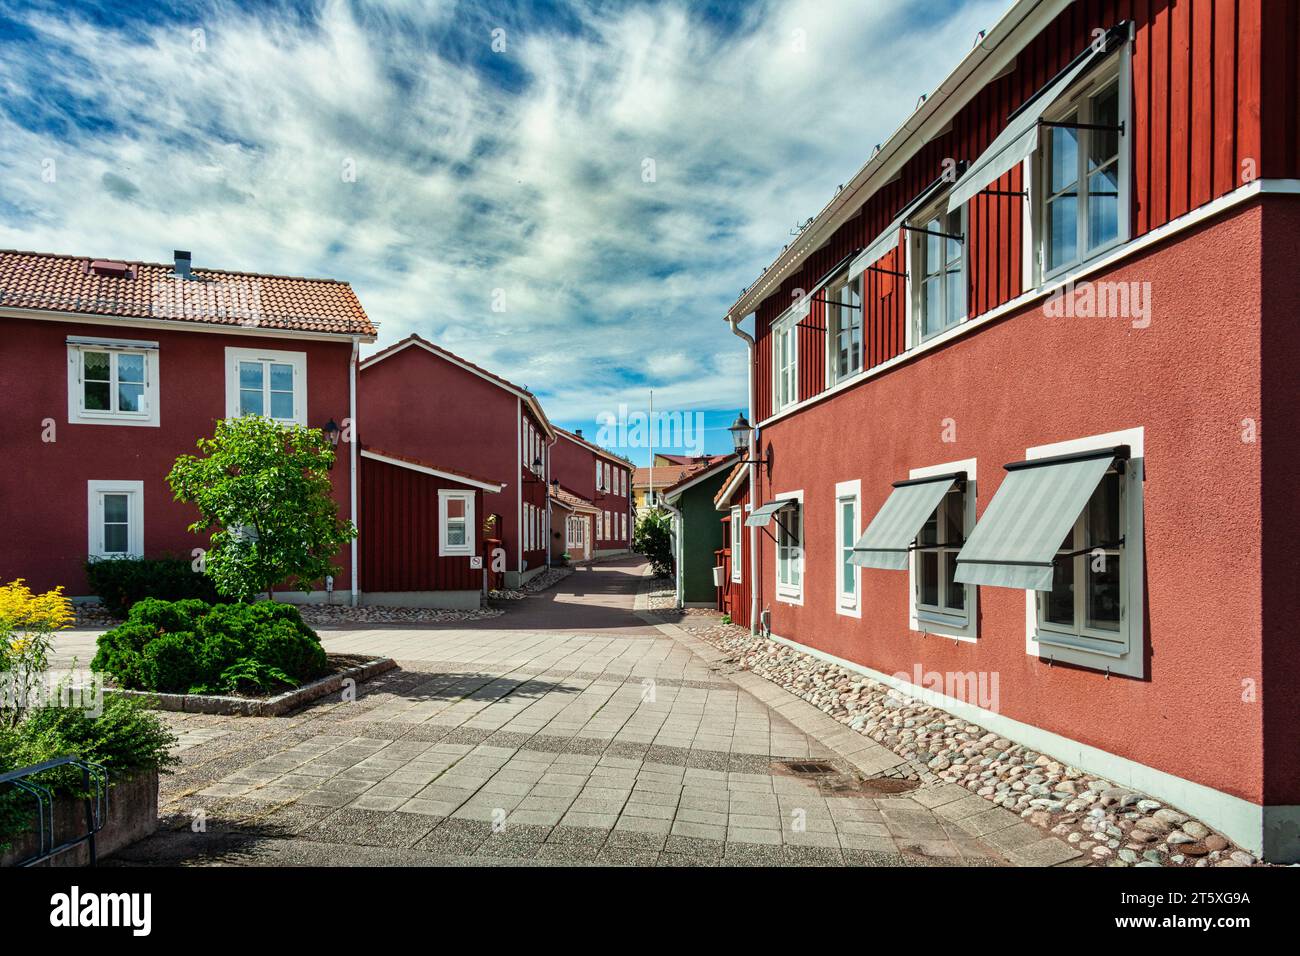 Città storica di Mora, una città nel centro della Svezia. Sede del traguardo del Vasaloppet, la più antica e lunga gara di sci di fondo. Svezia, Foto Stock